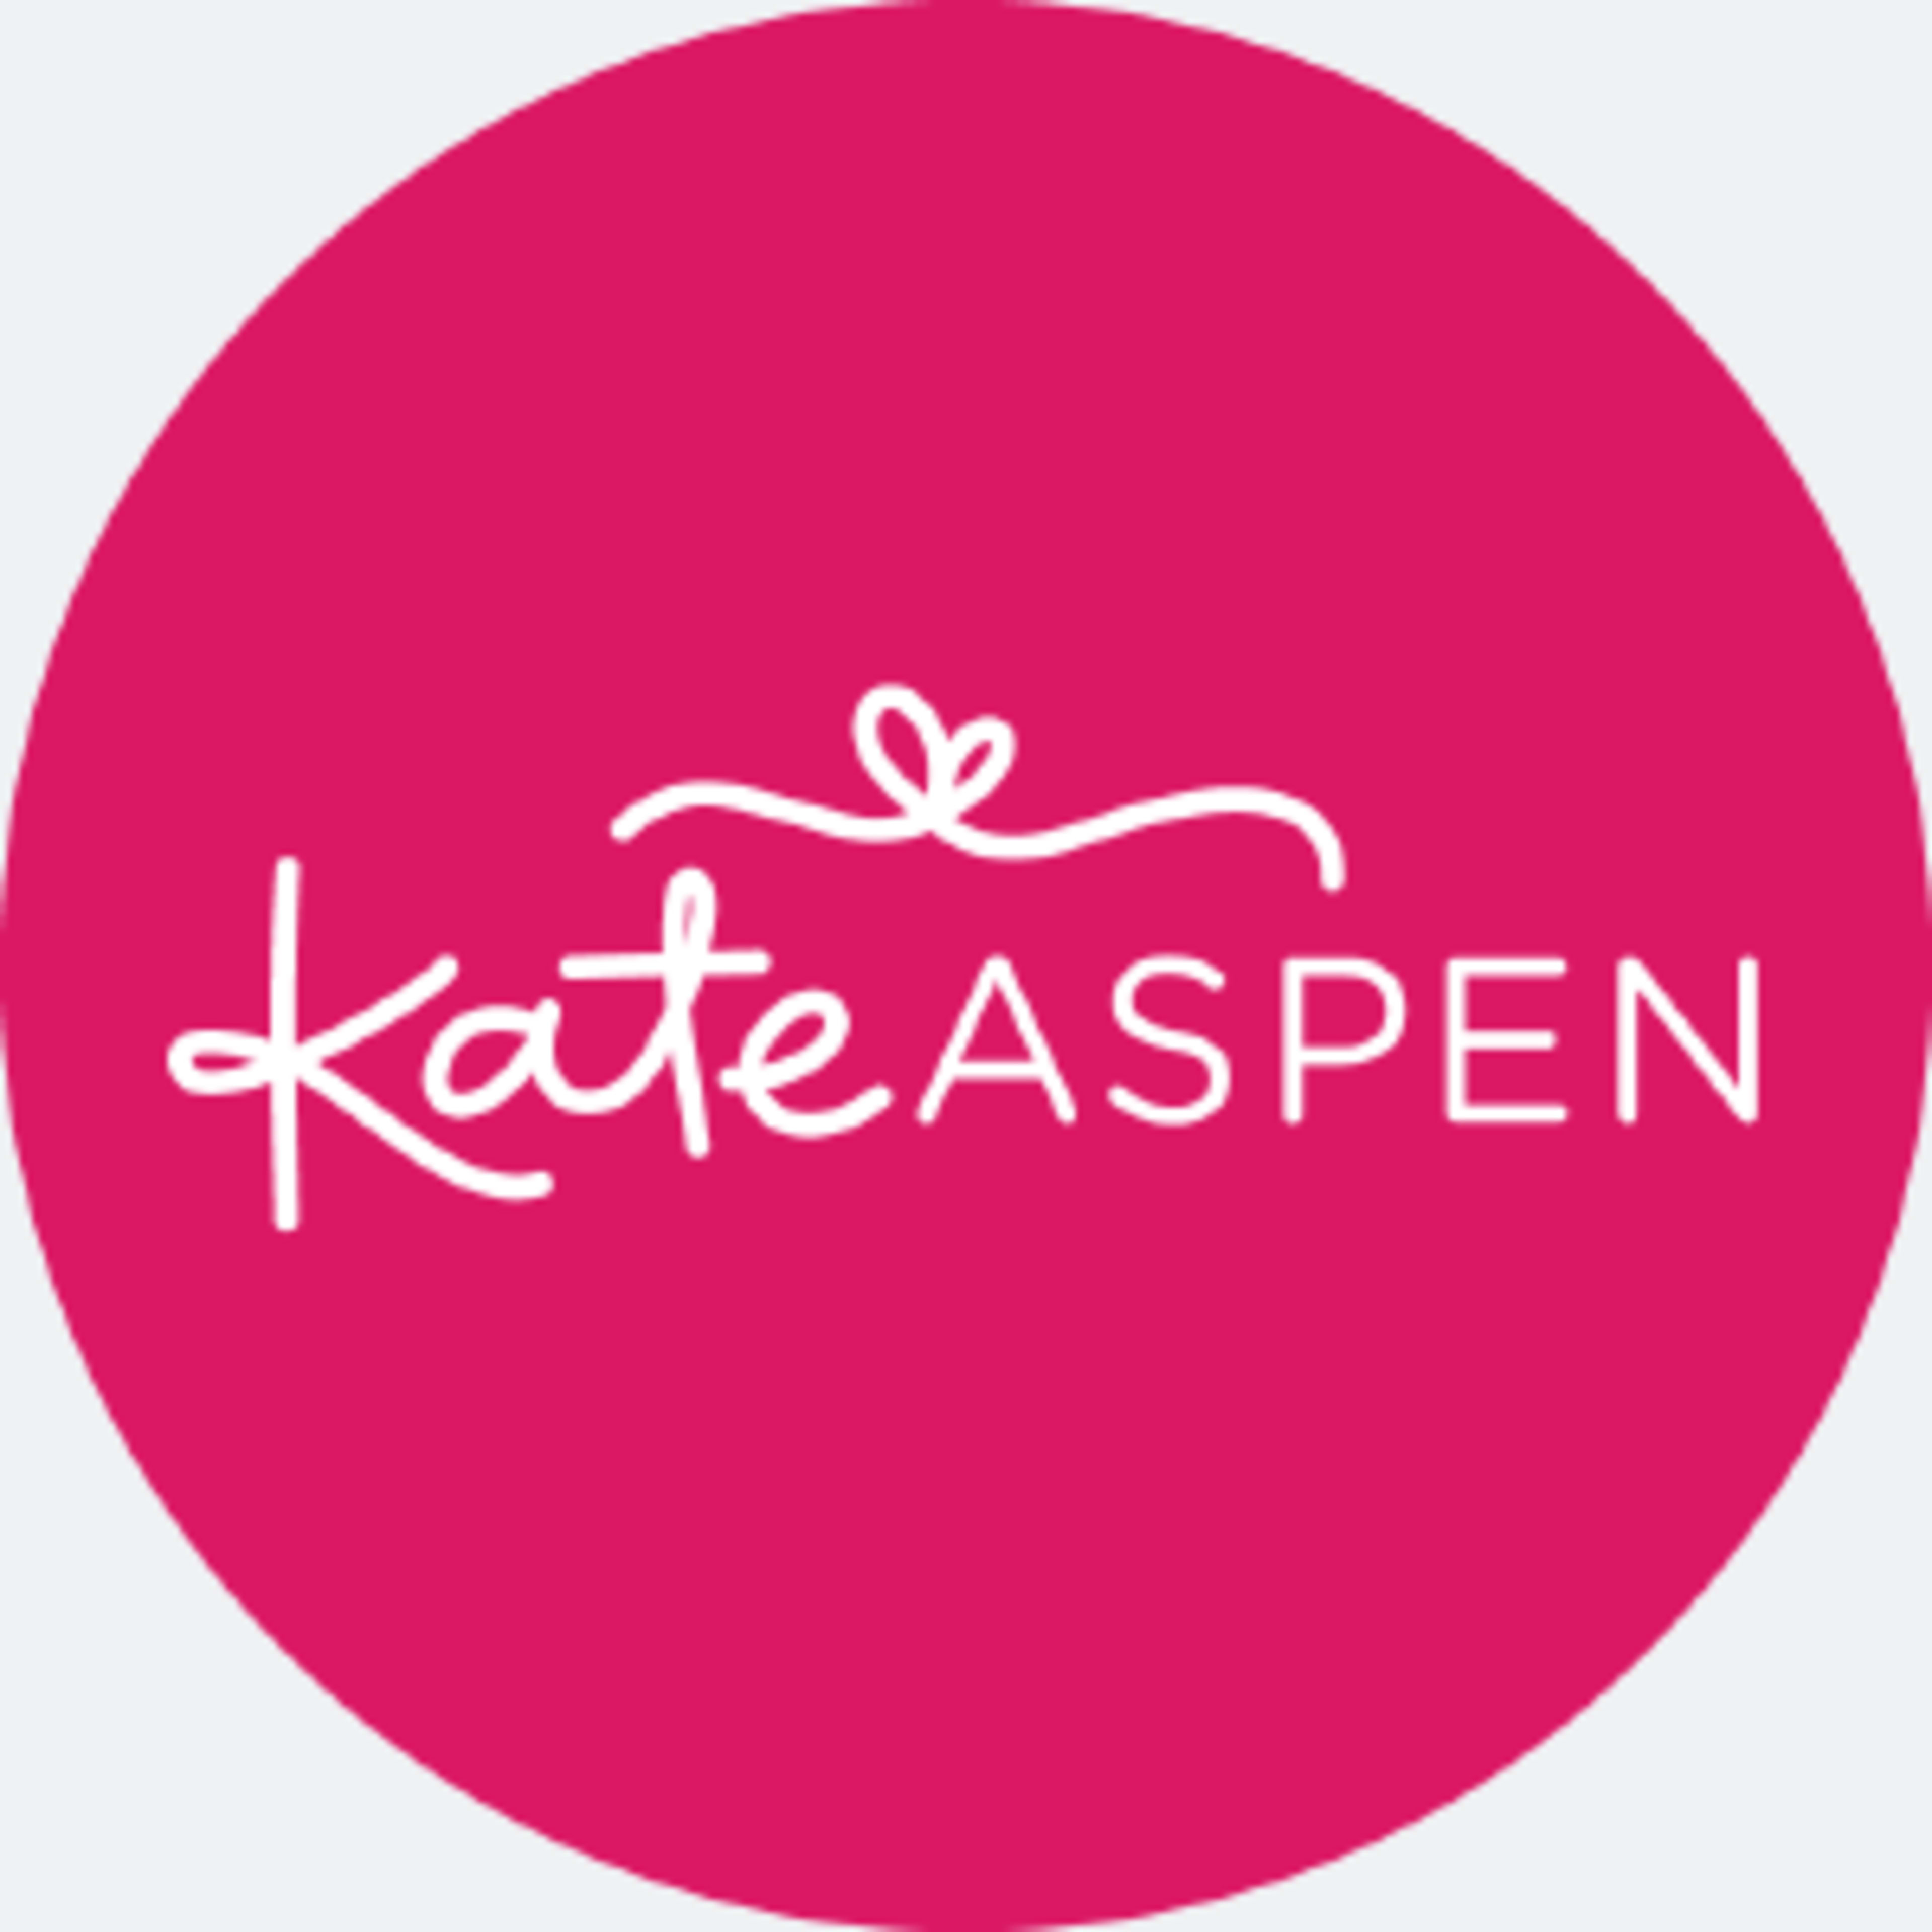 Kate Aspen Code